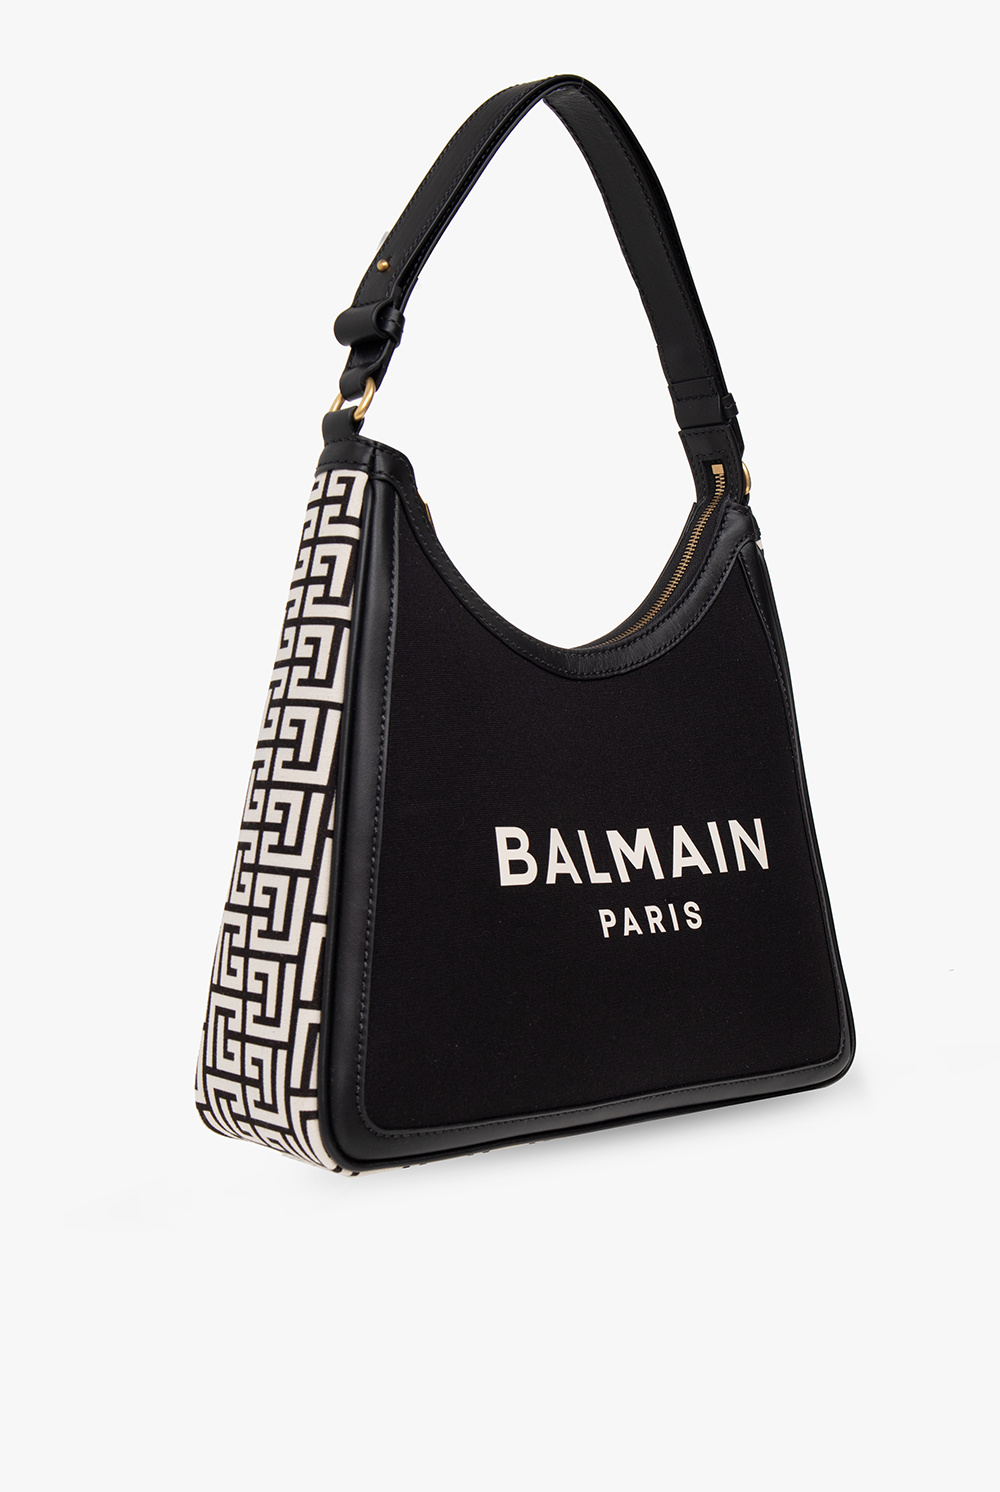 balmain saj ‘B-Army’ shoulder bag